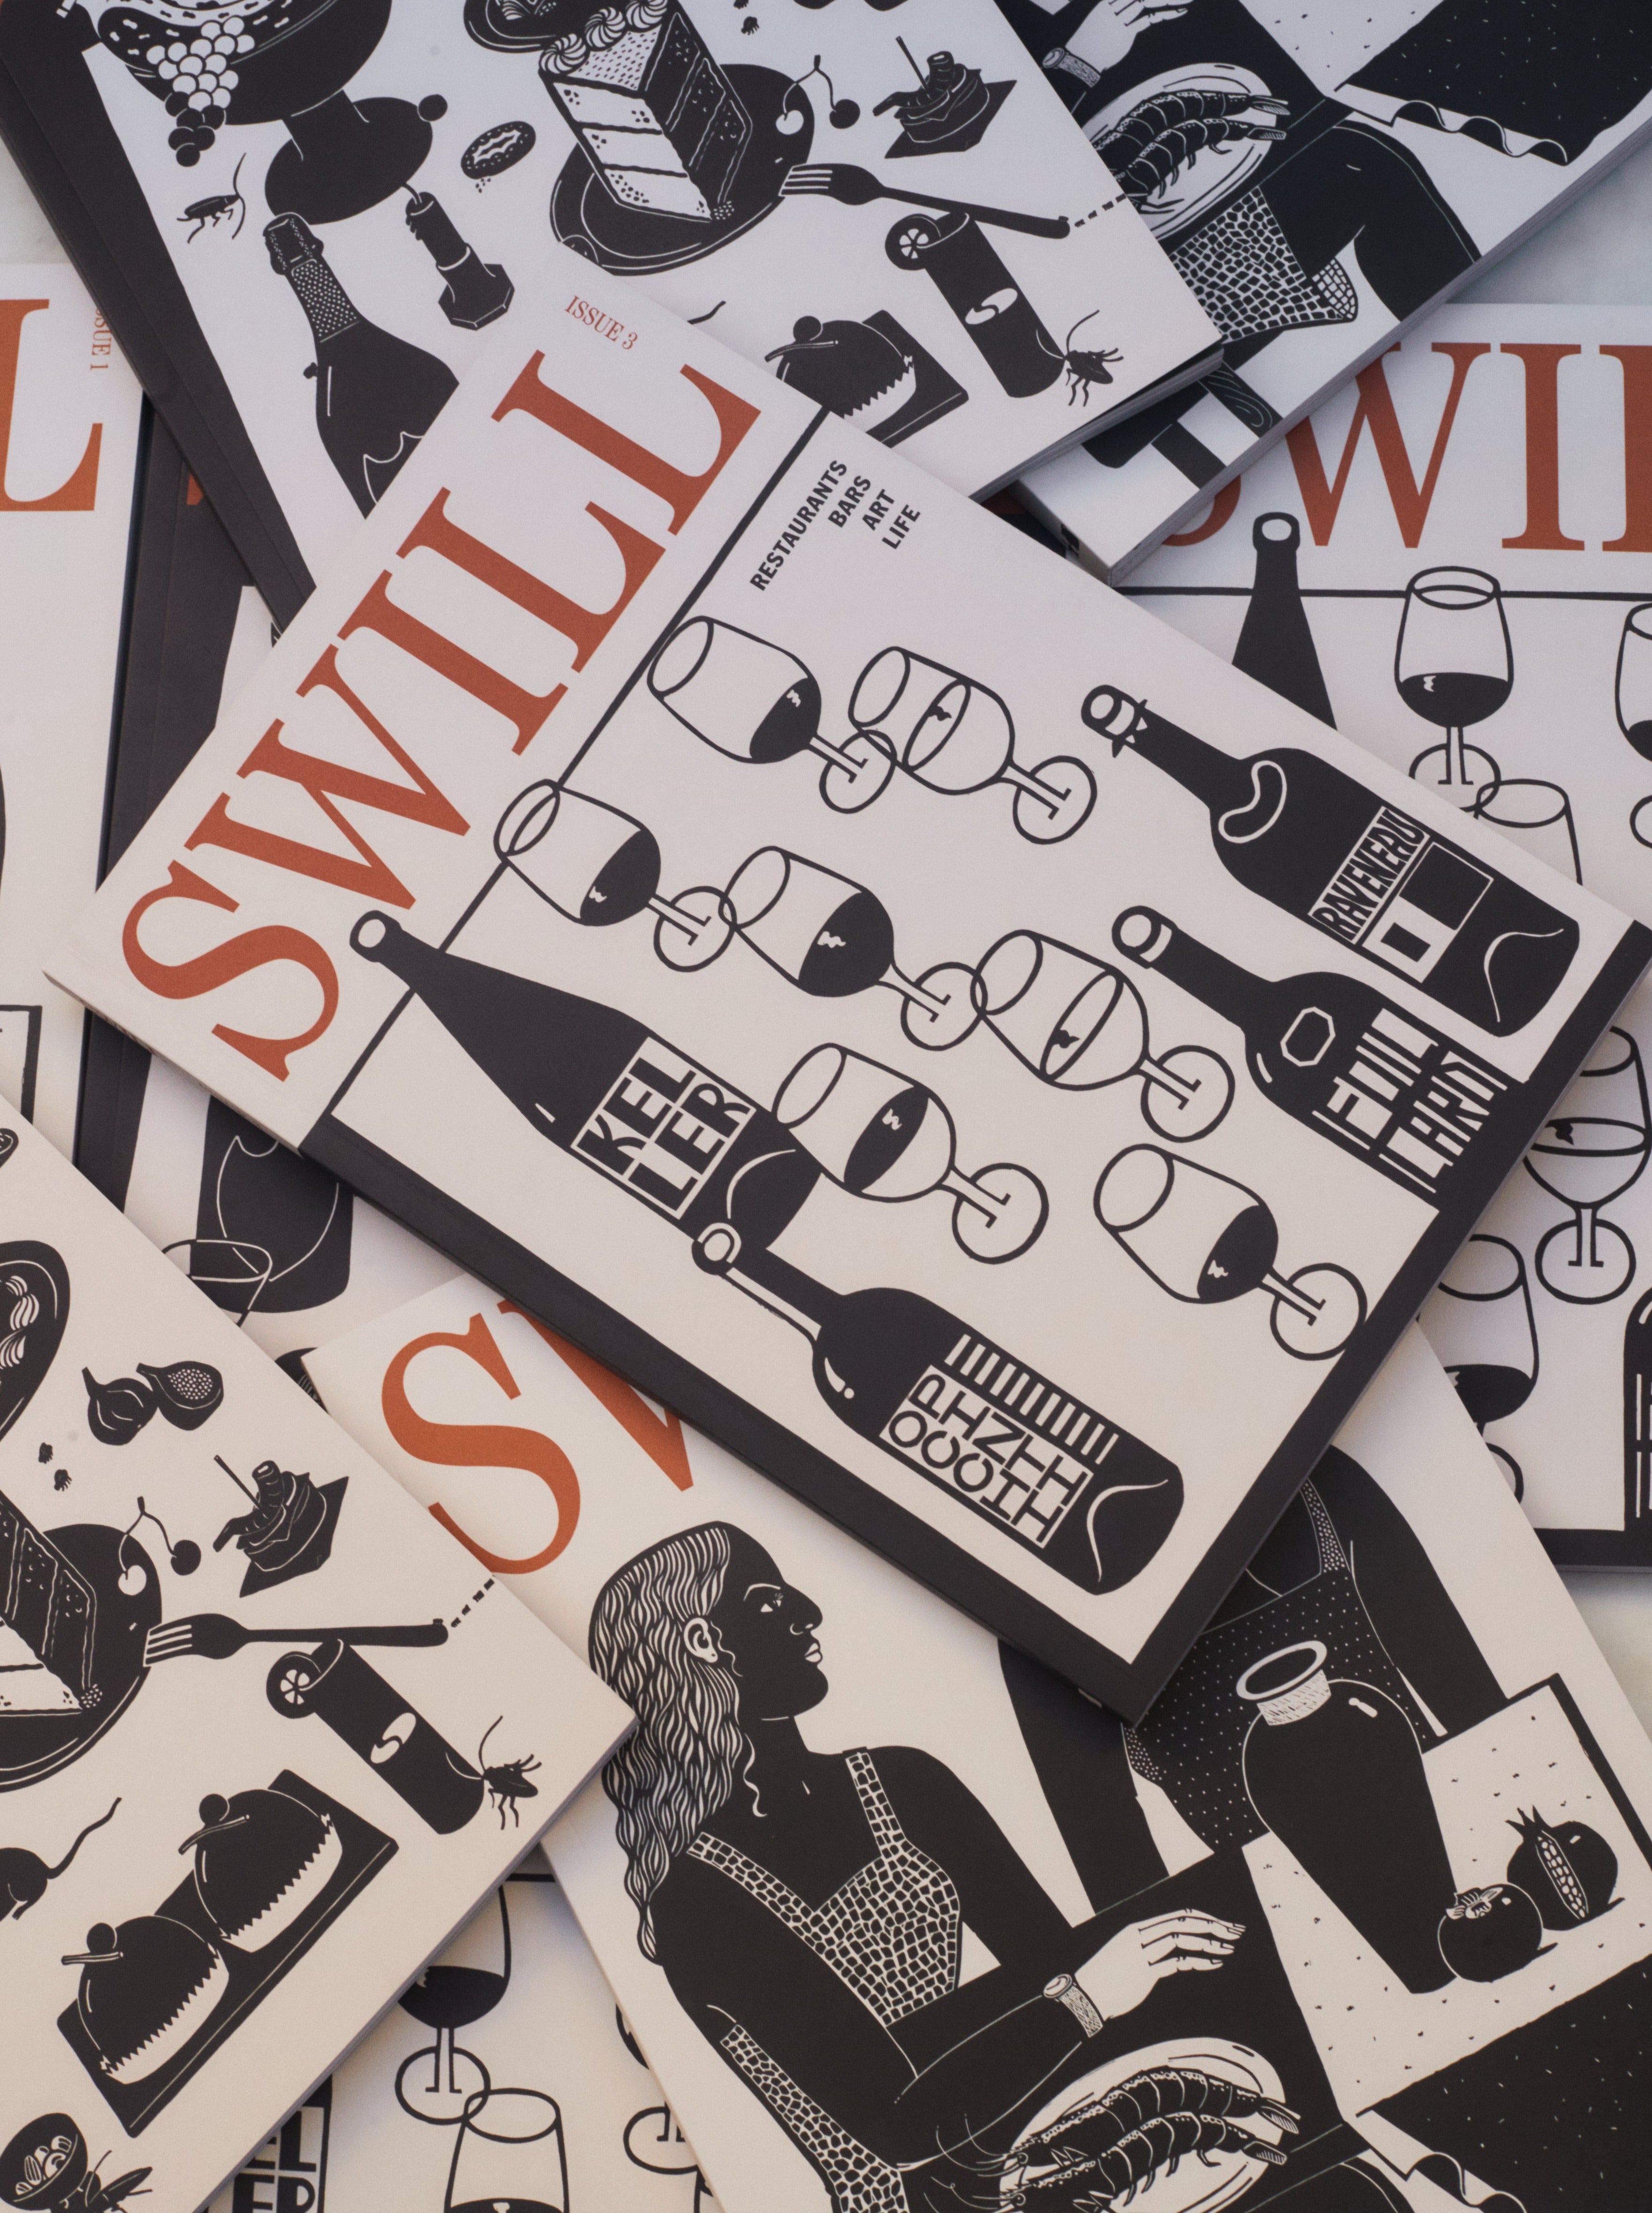 Swill Magazine #3